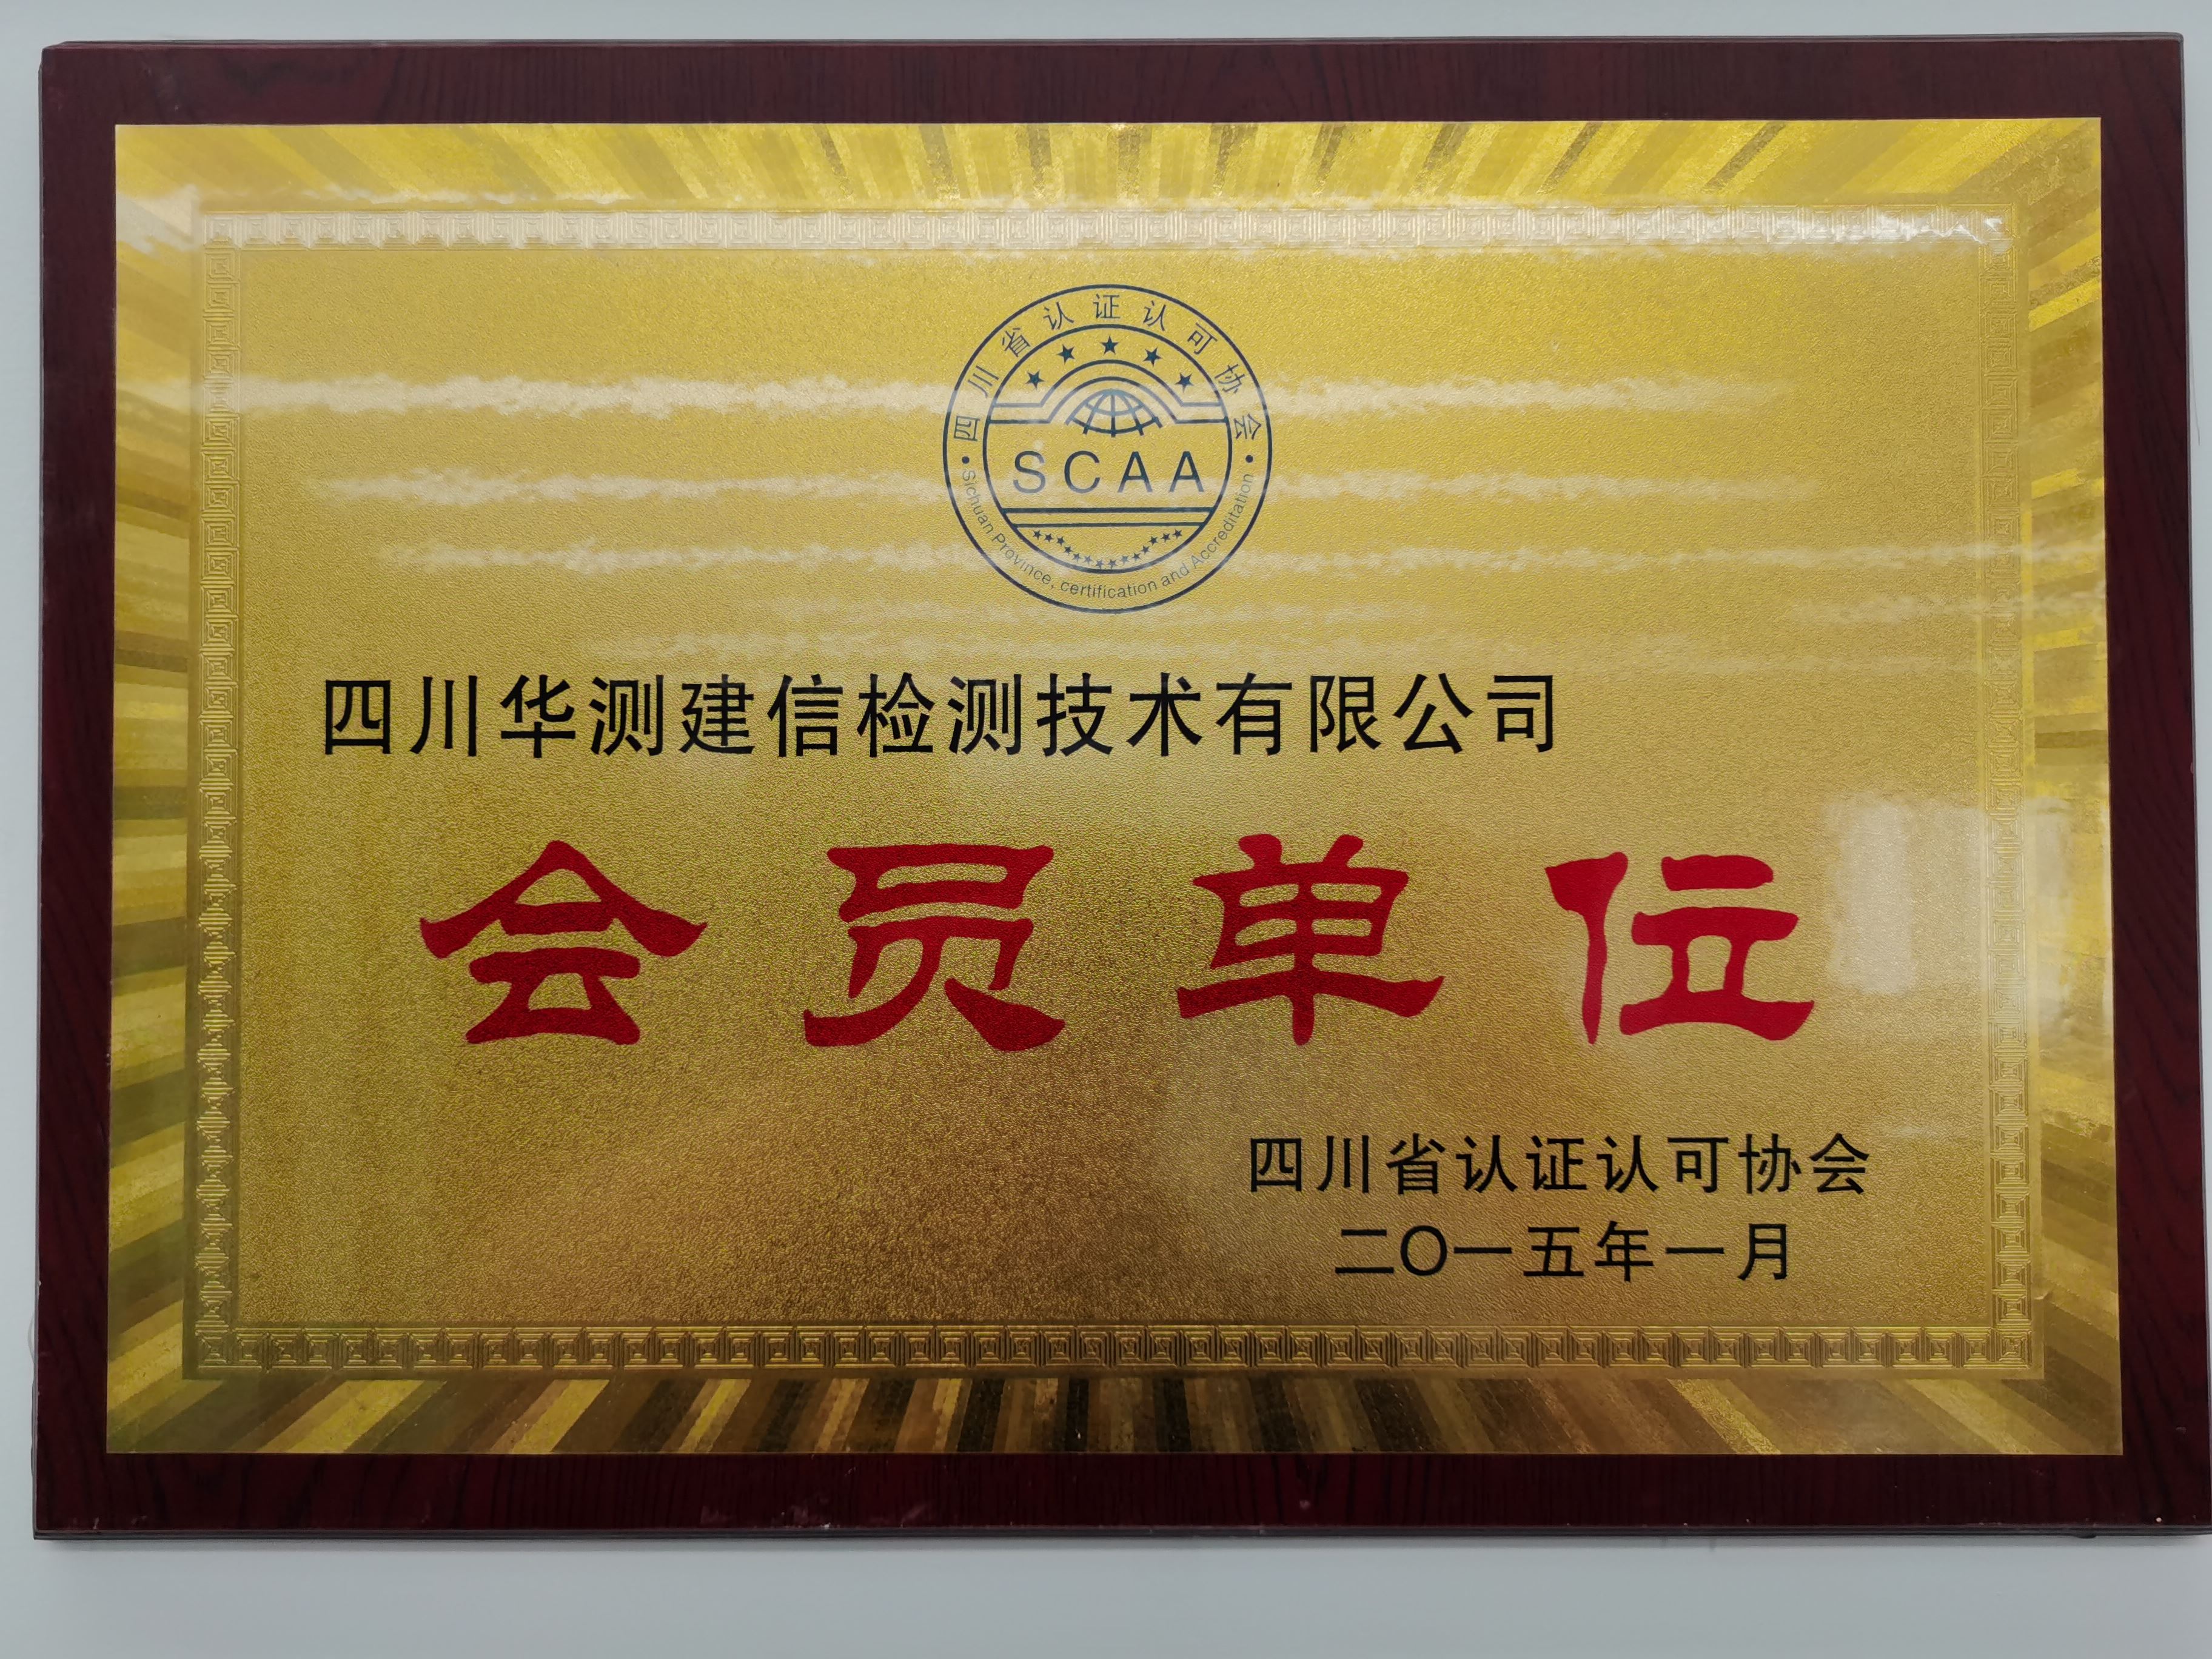 四川省认证认可协会会员单位